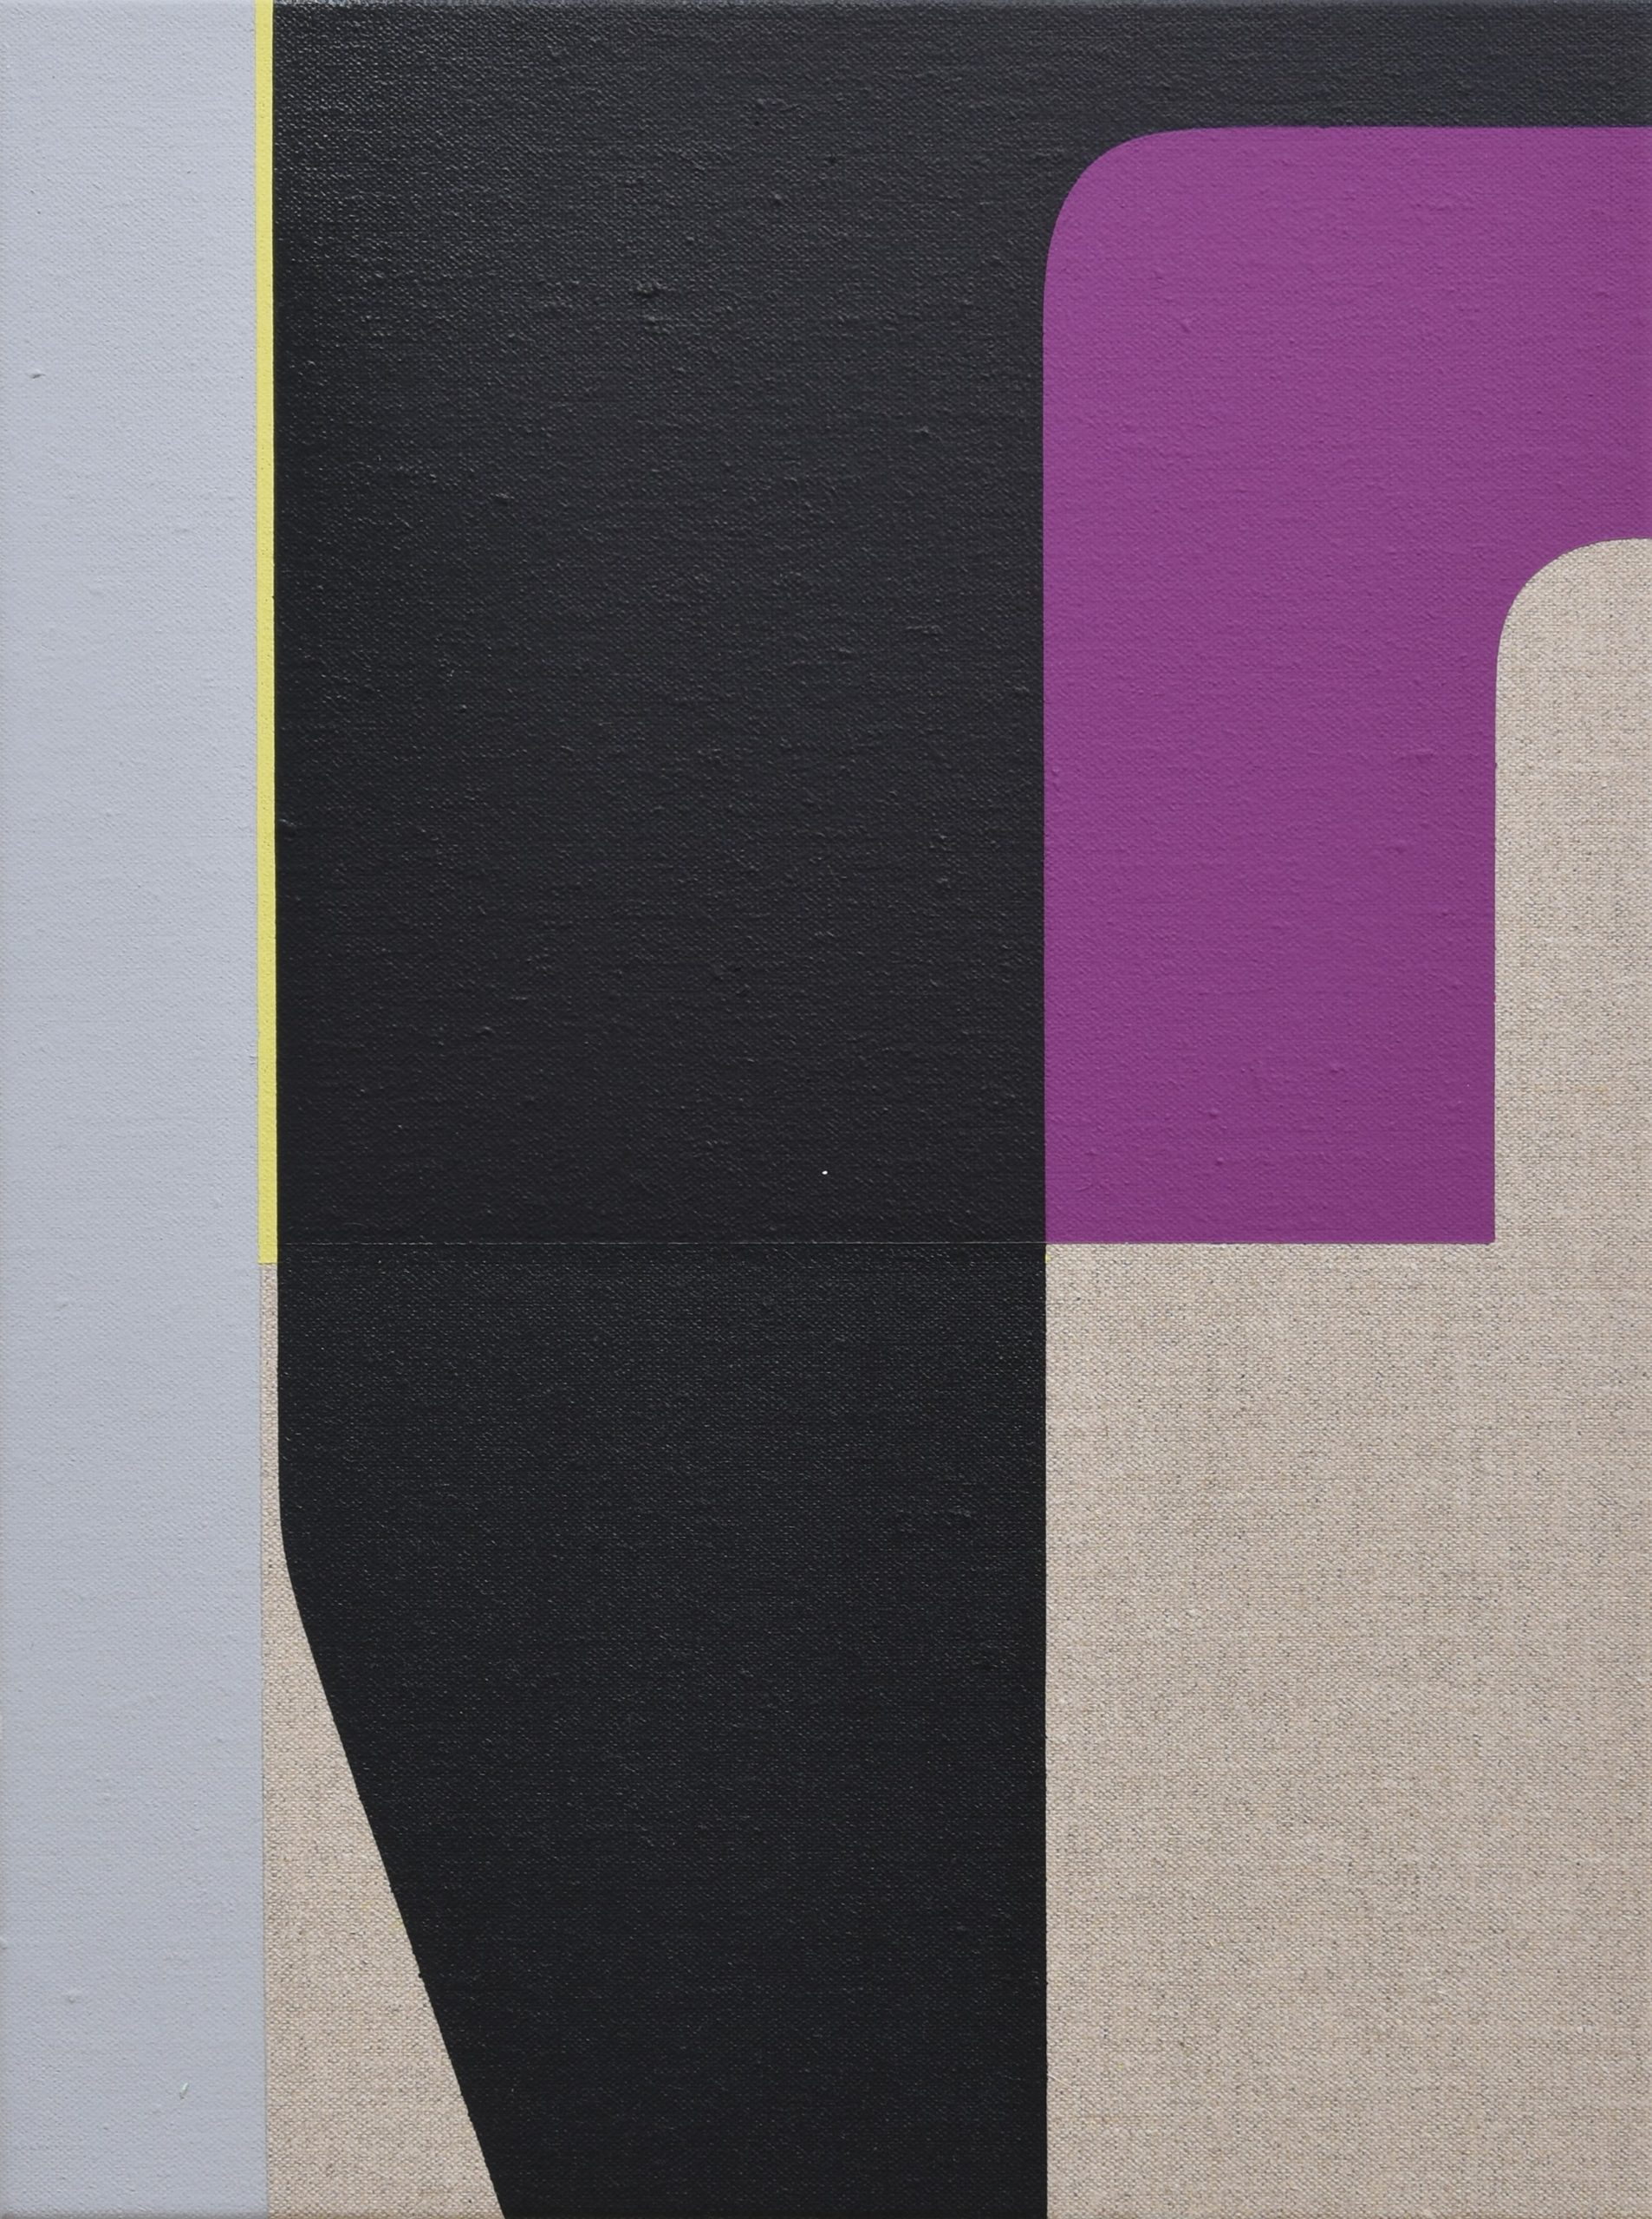 Matthew Browne 'Opia 8' vinyl tempera and oil on linen 40.5 x 30cm $4,000